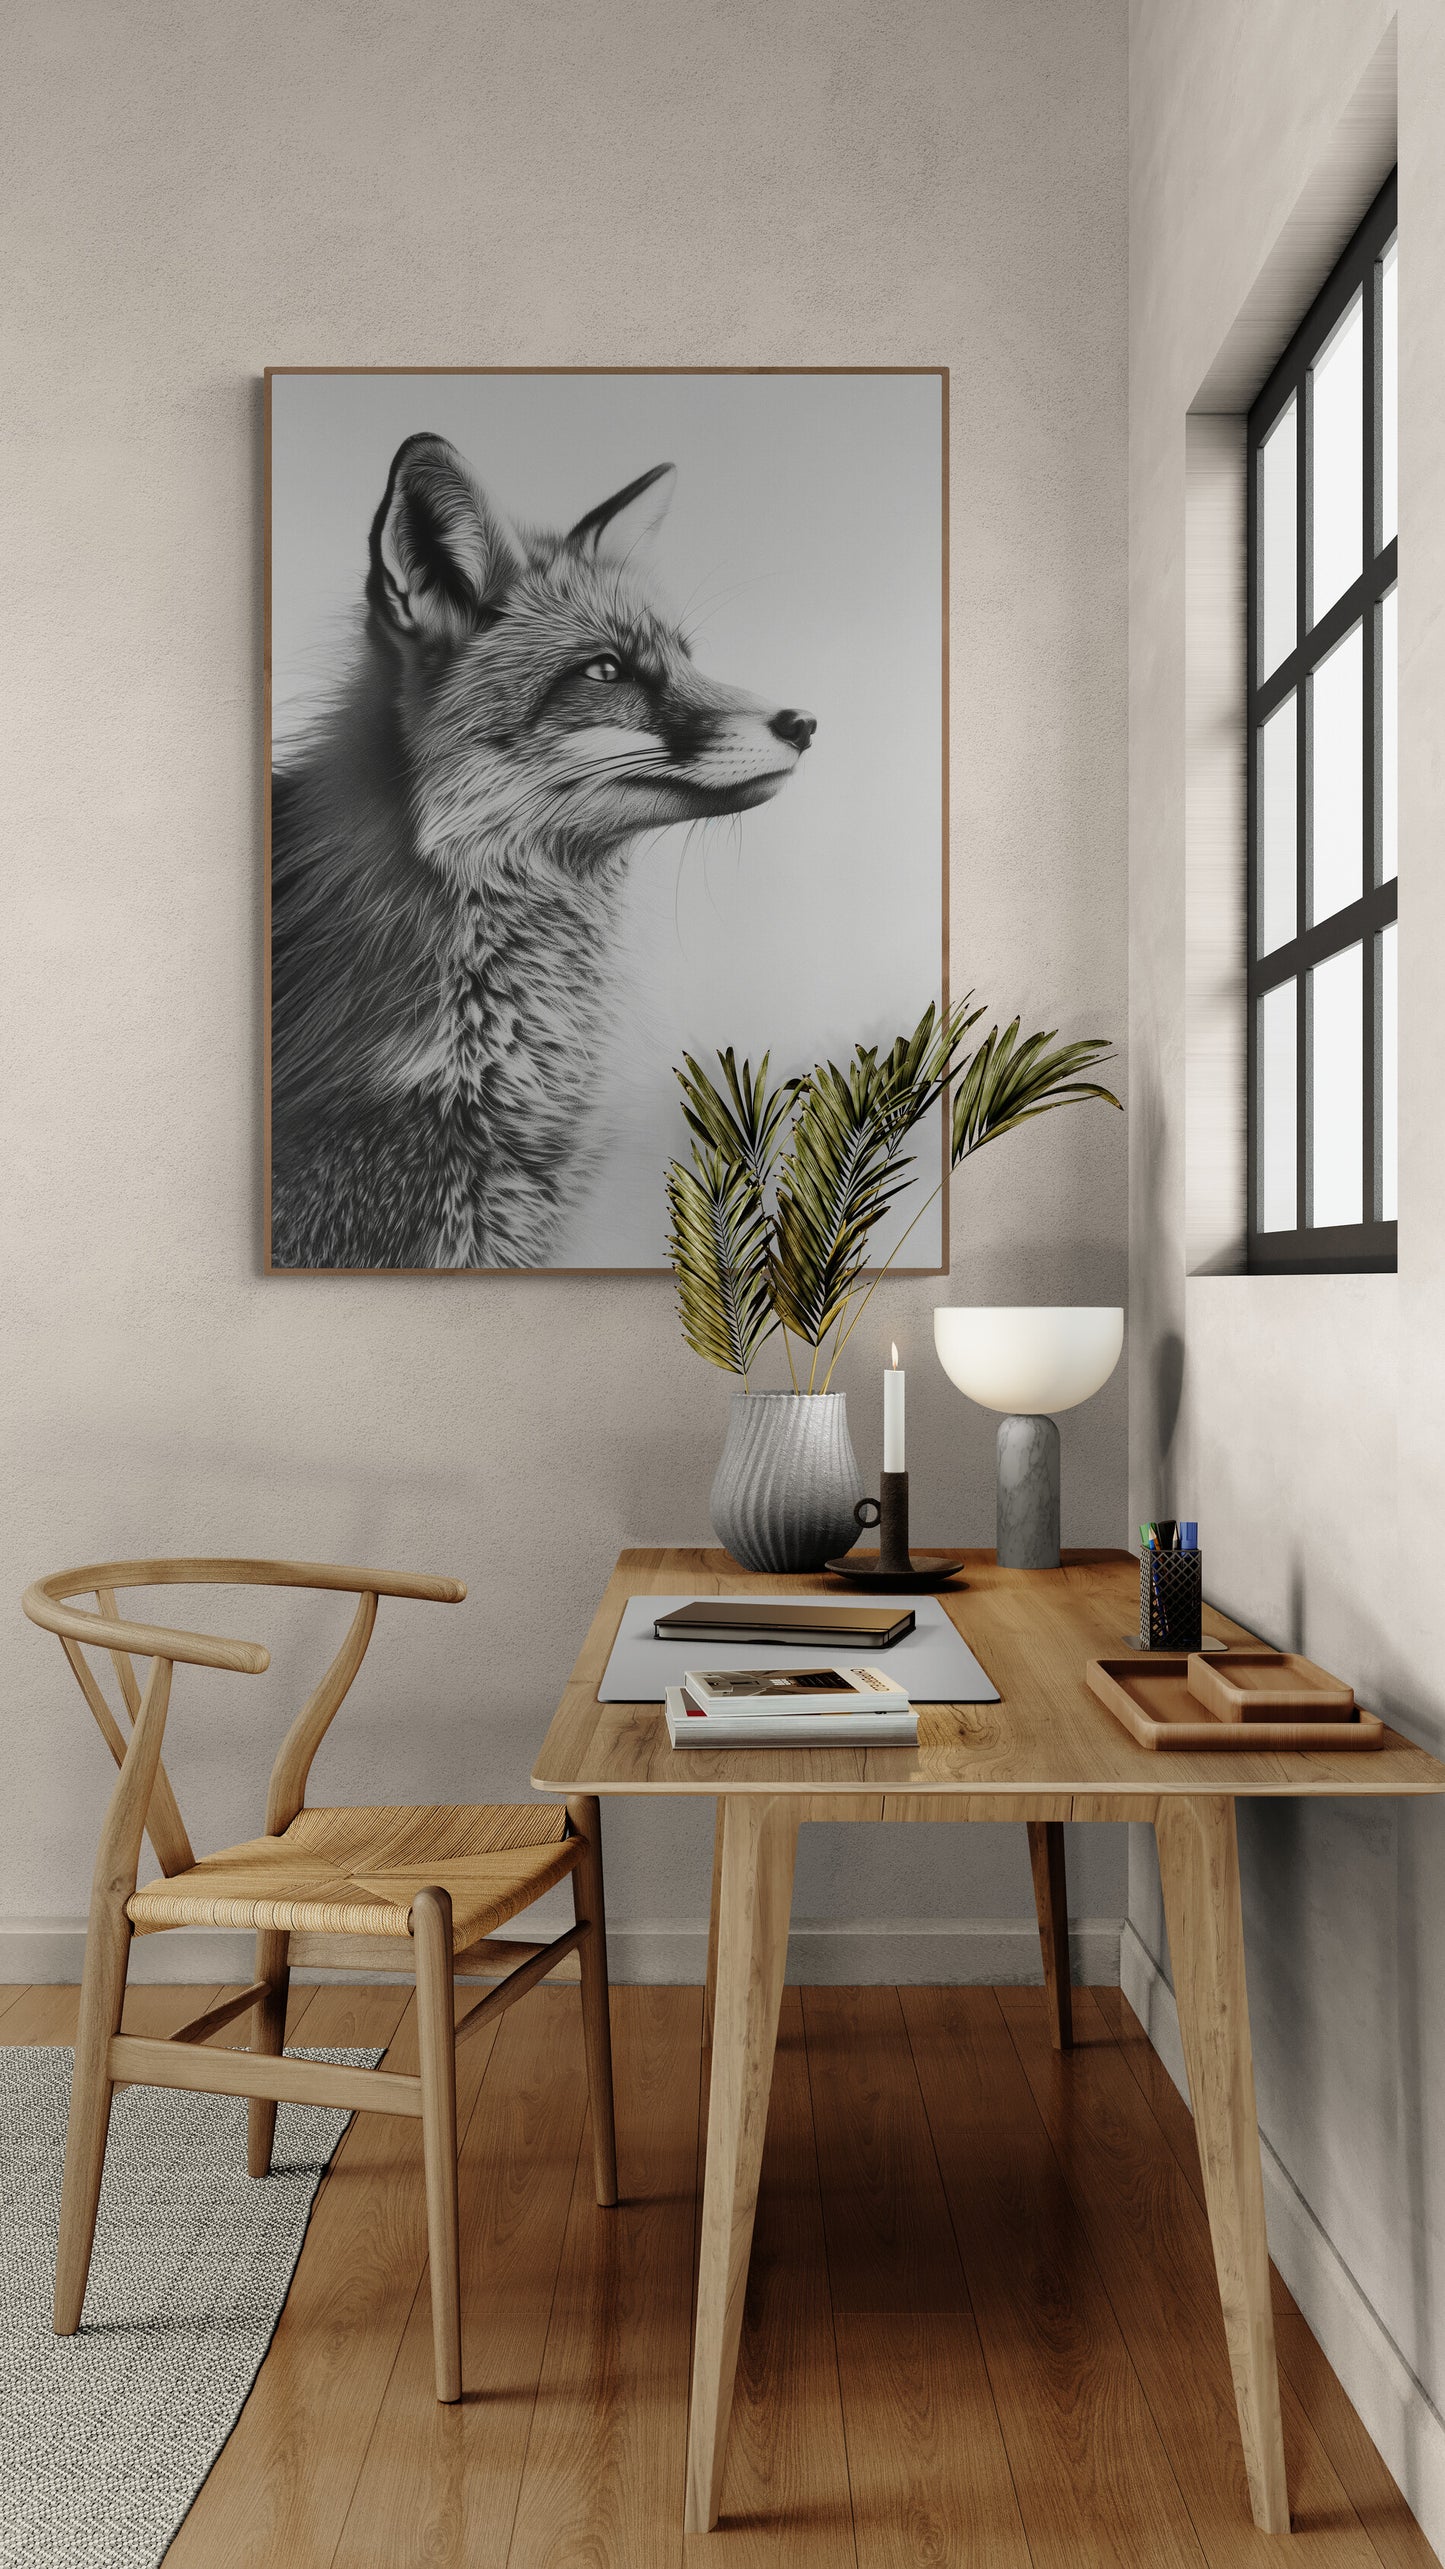 Poster encadré d'un renard surplombant un bureau en bois avec accessoires modernes.